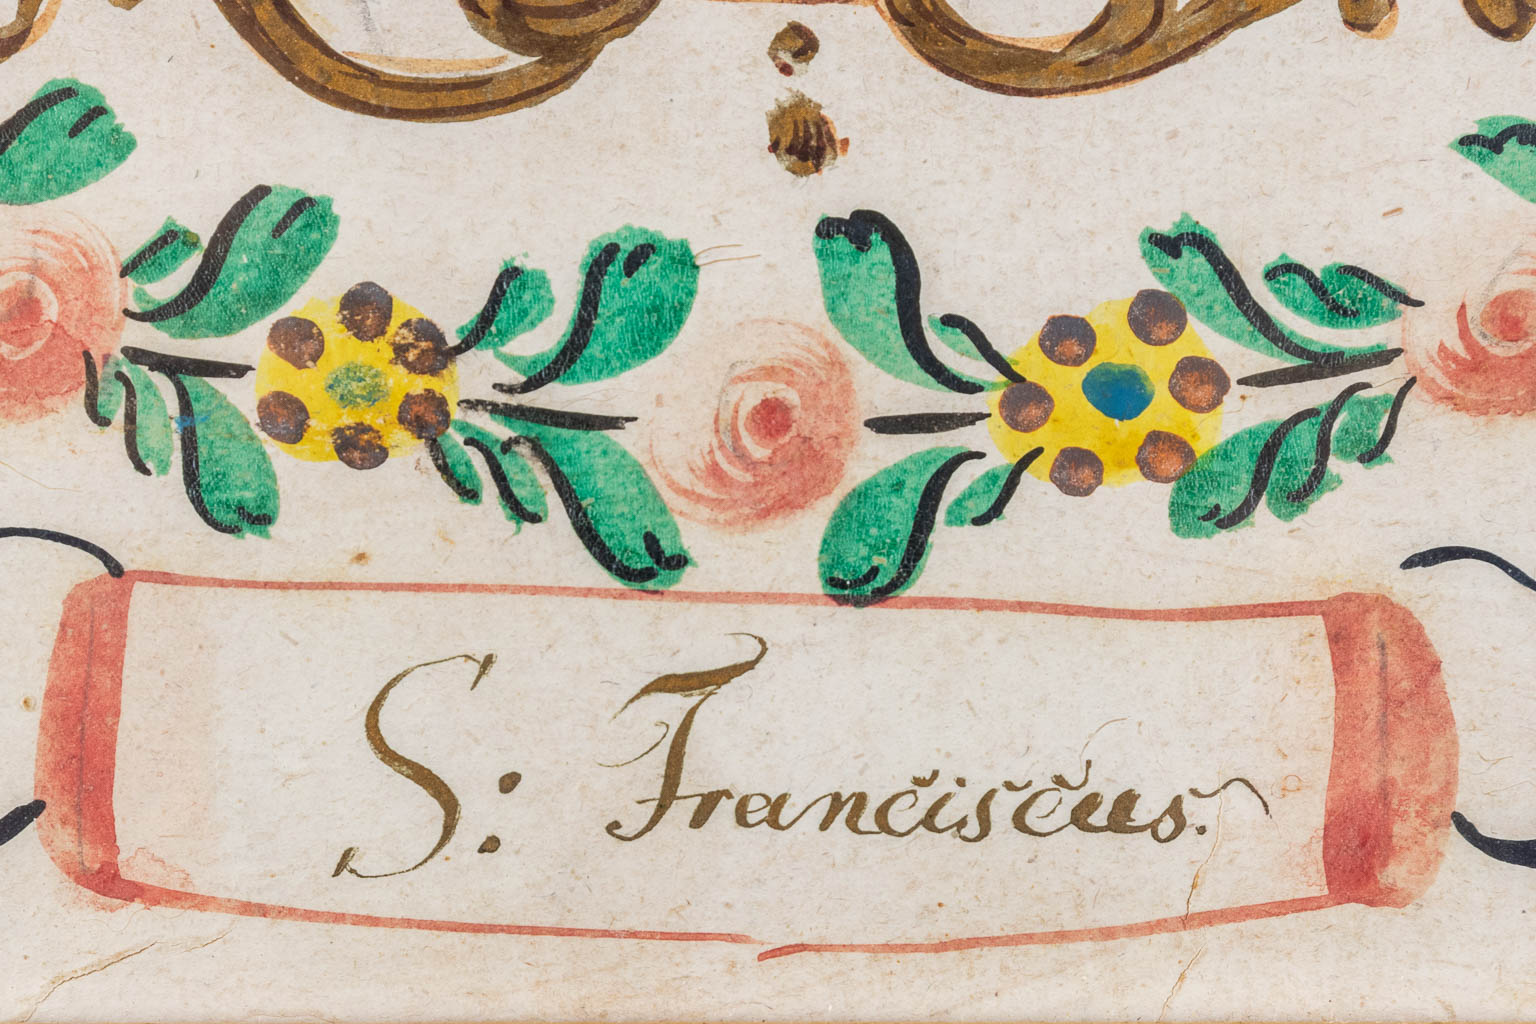 A set of 5 antique 'Santjes', paper, 17th/18th C. (W:18 x H:22 cm)